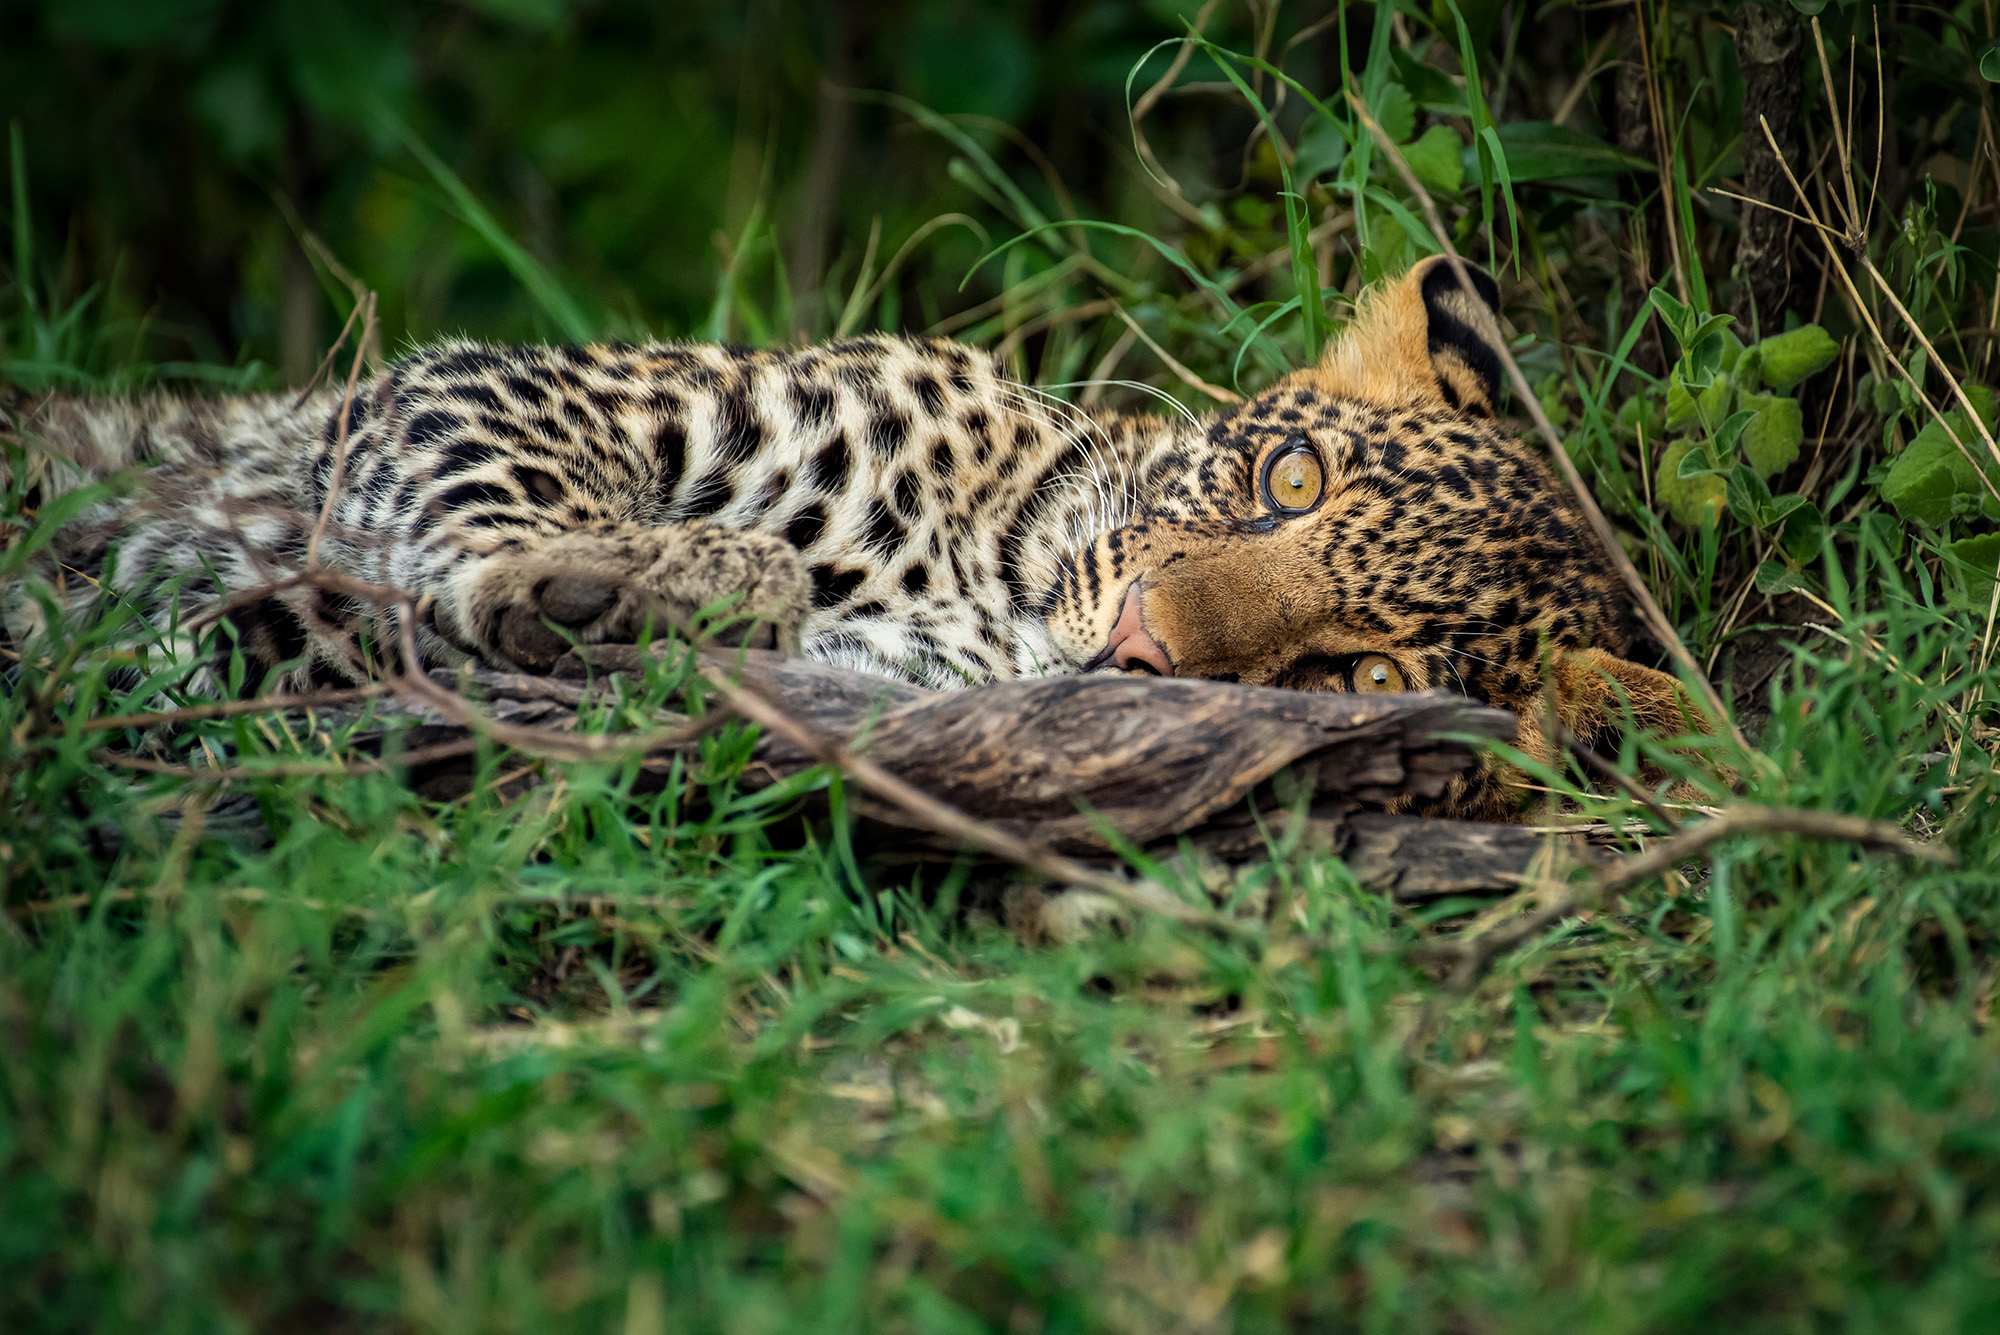 ВИДЕО: Котёнок леопарда. Пока мама на охоте.